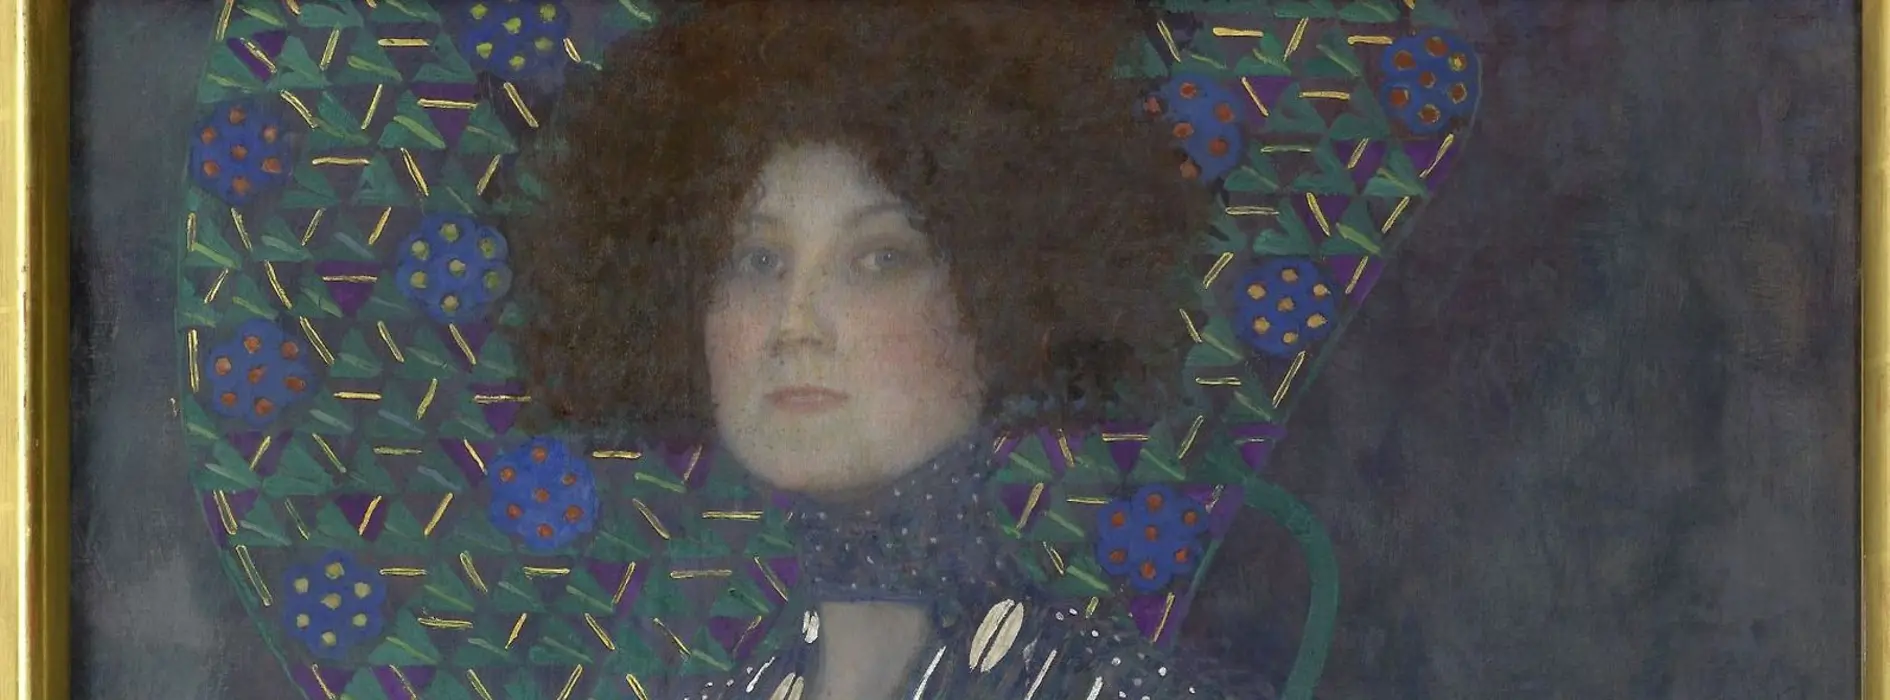 Gustav Klimt: Portrét Emilie Flöge (1902)